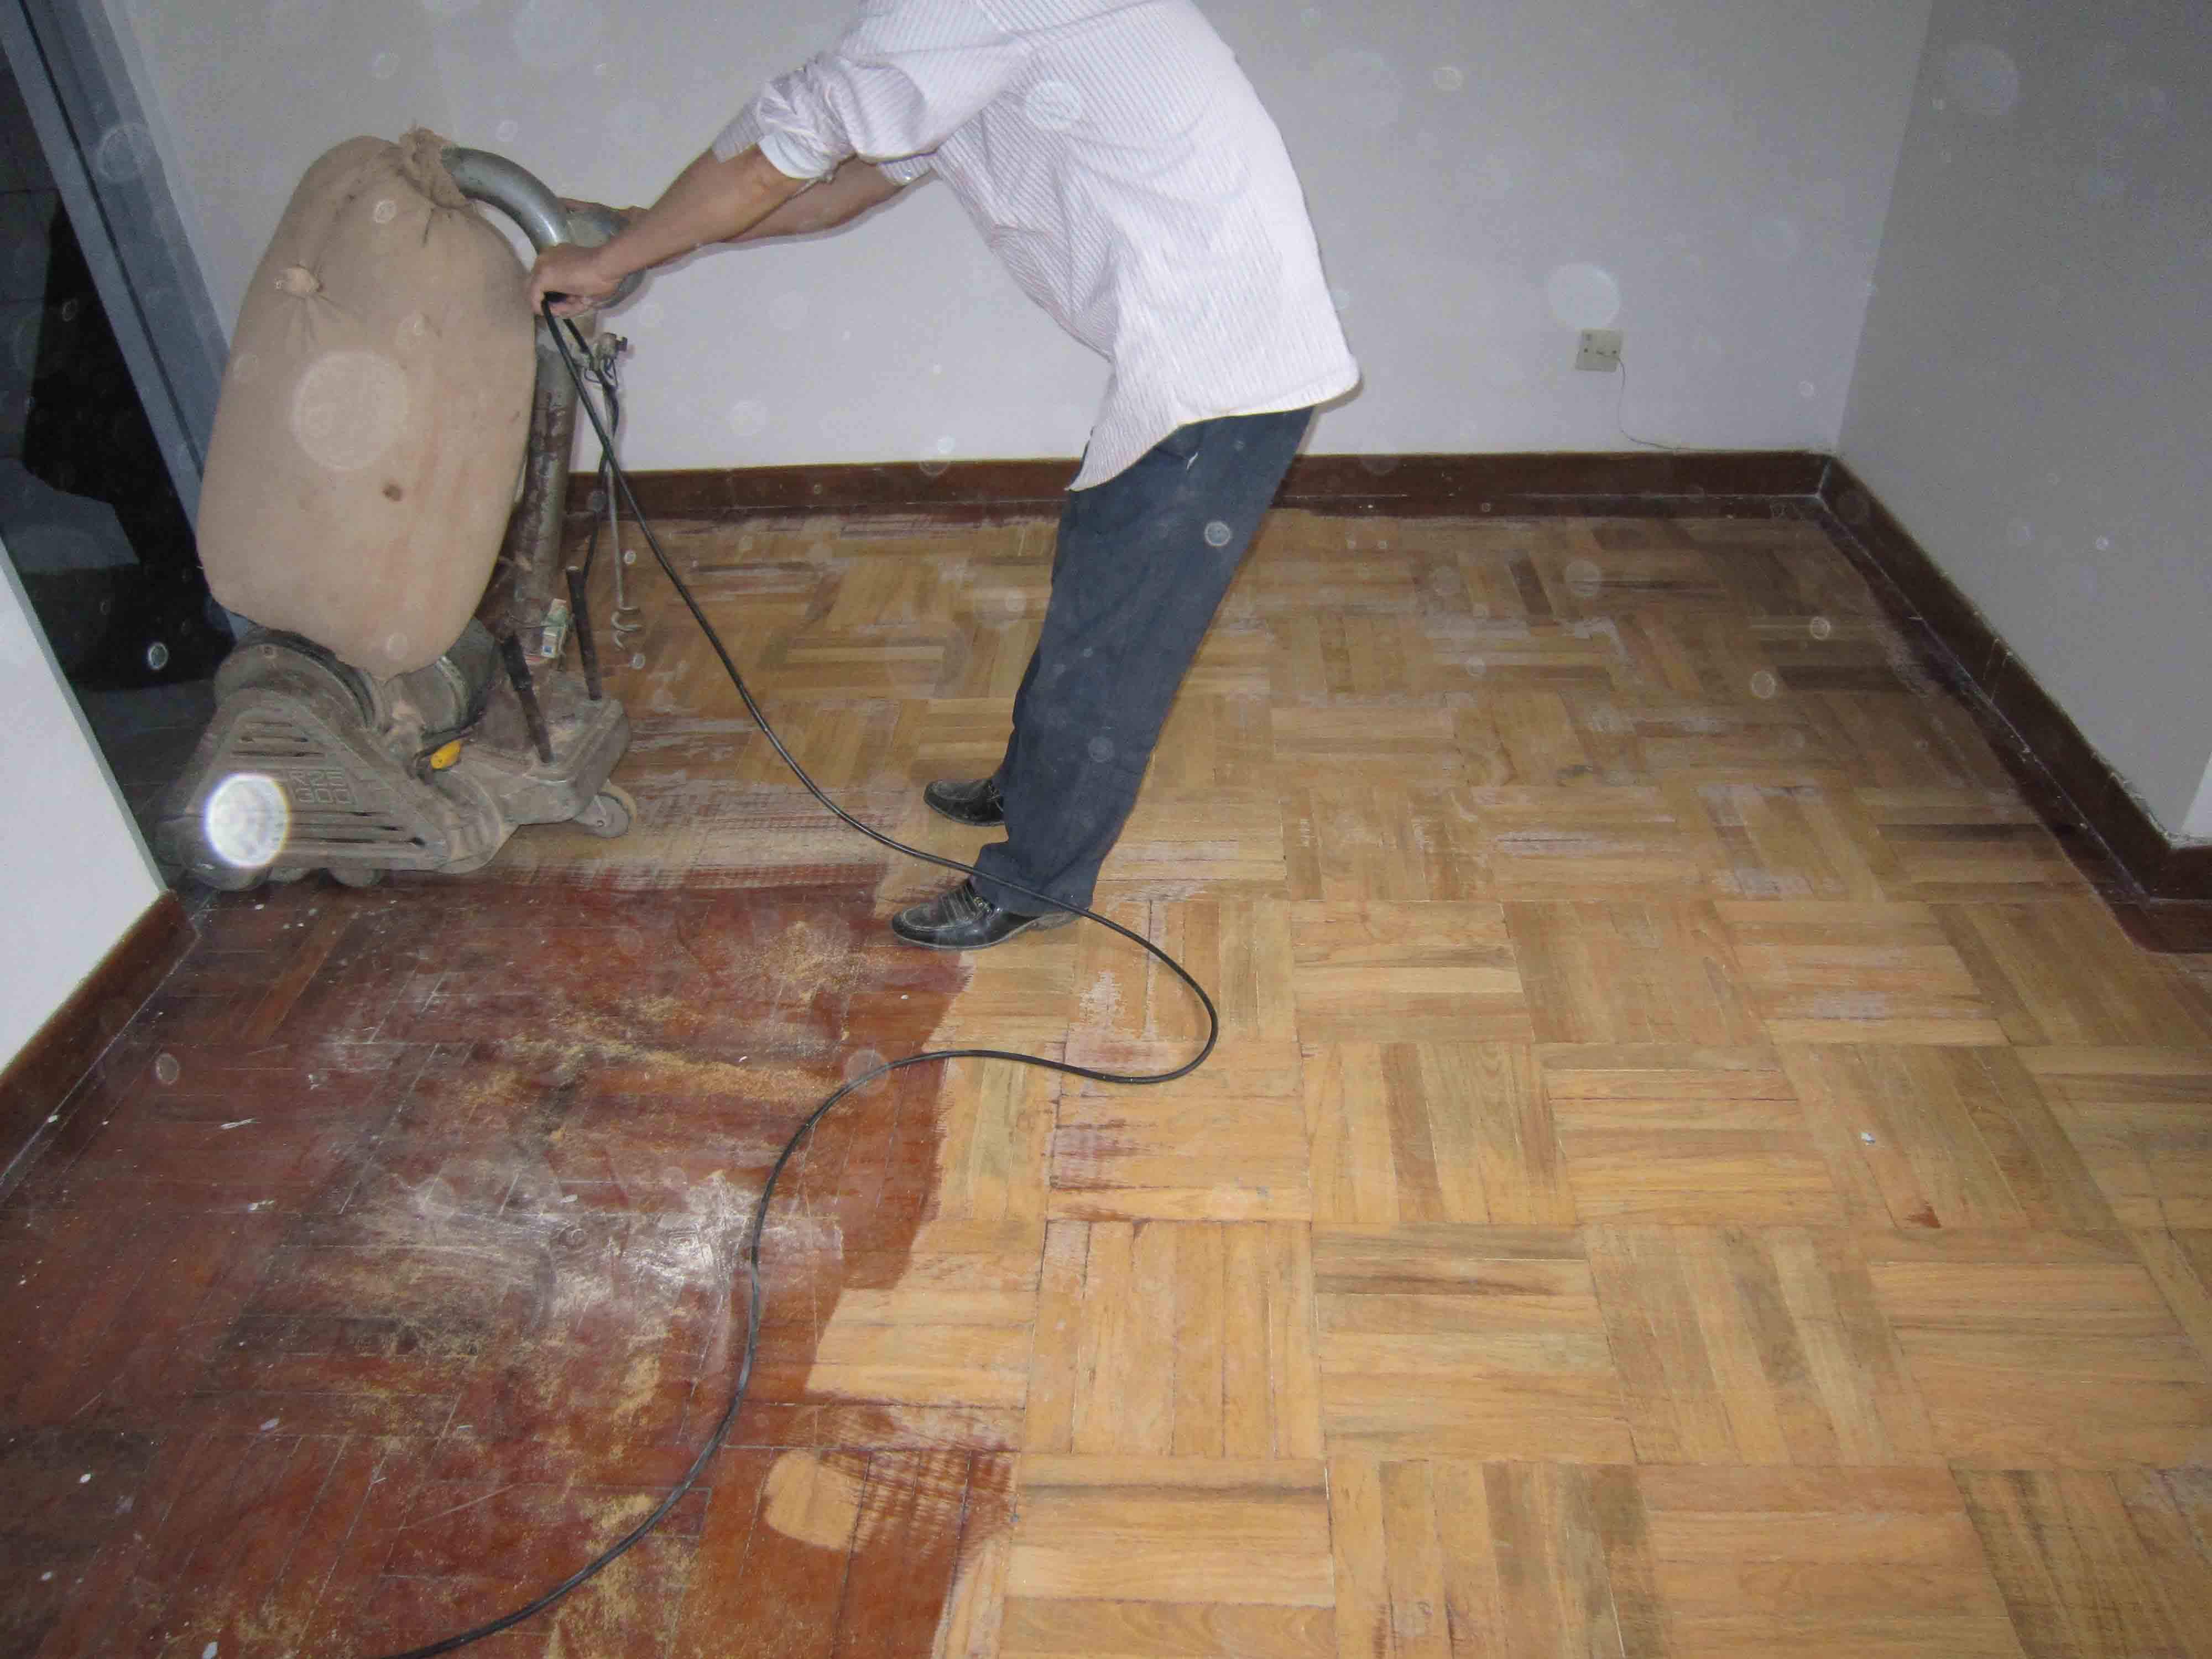 旧地板如何翻新?旧地板翻新要注意什么?